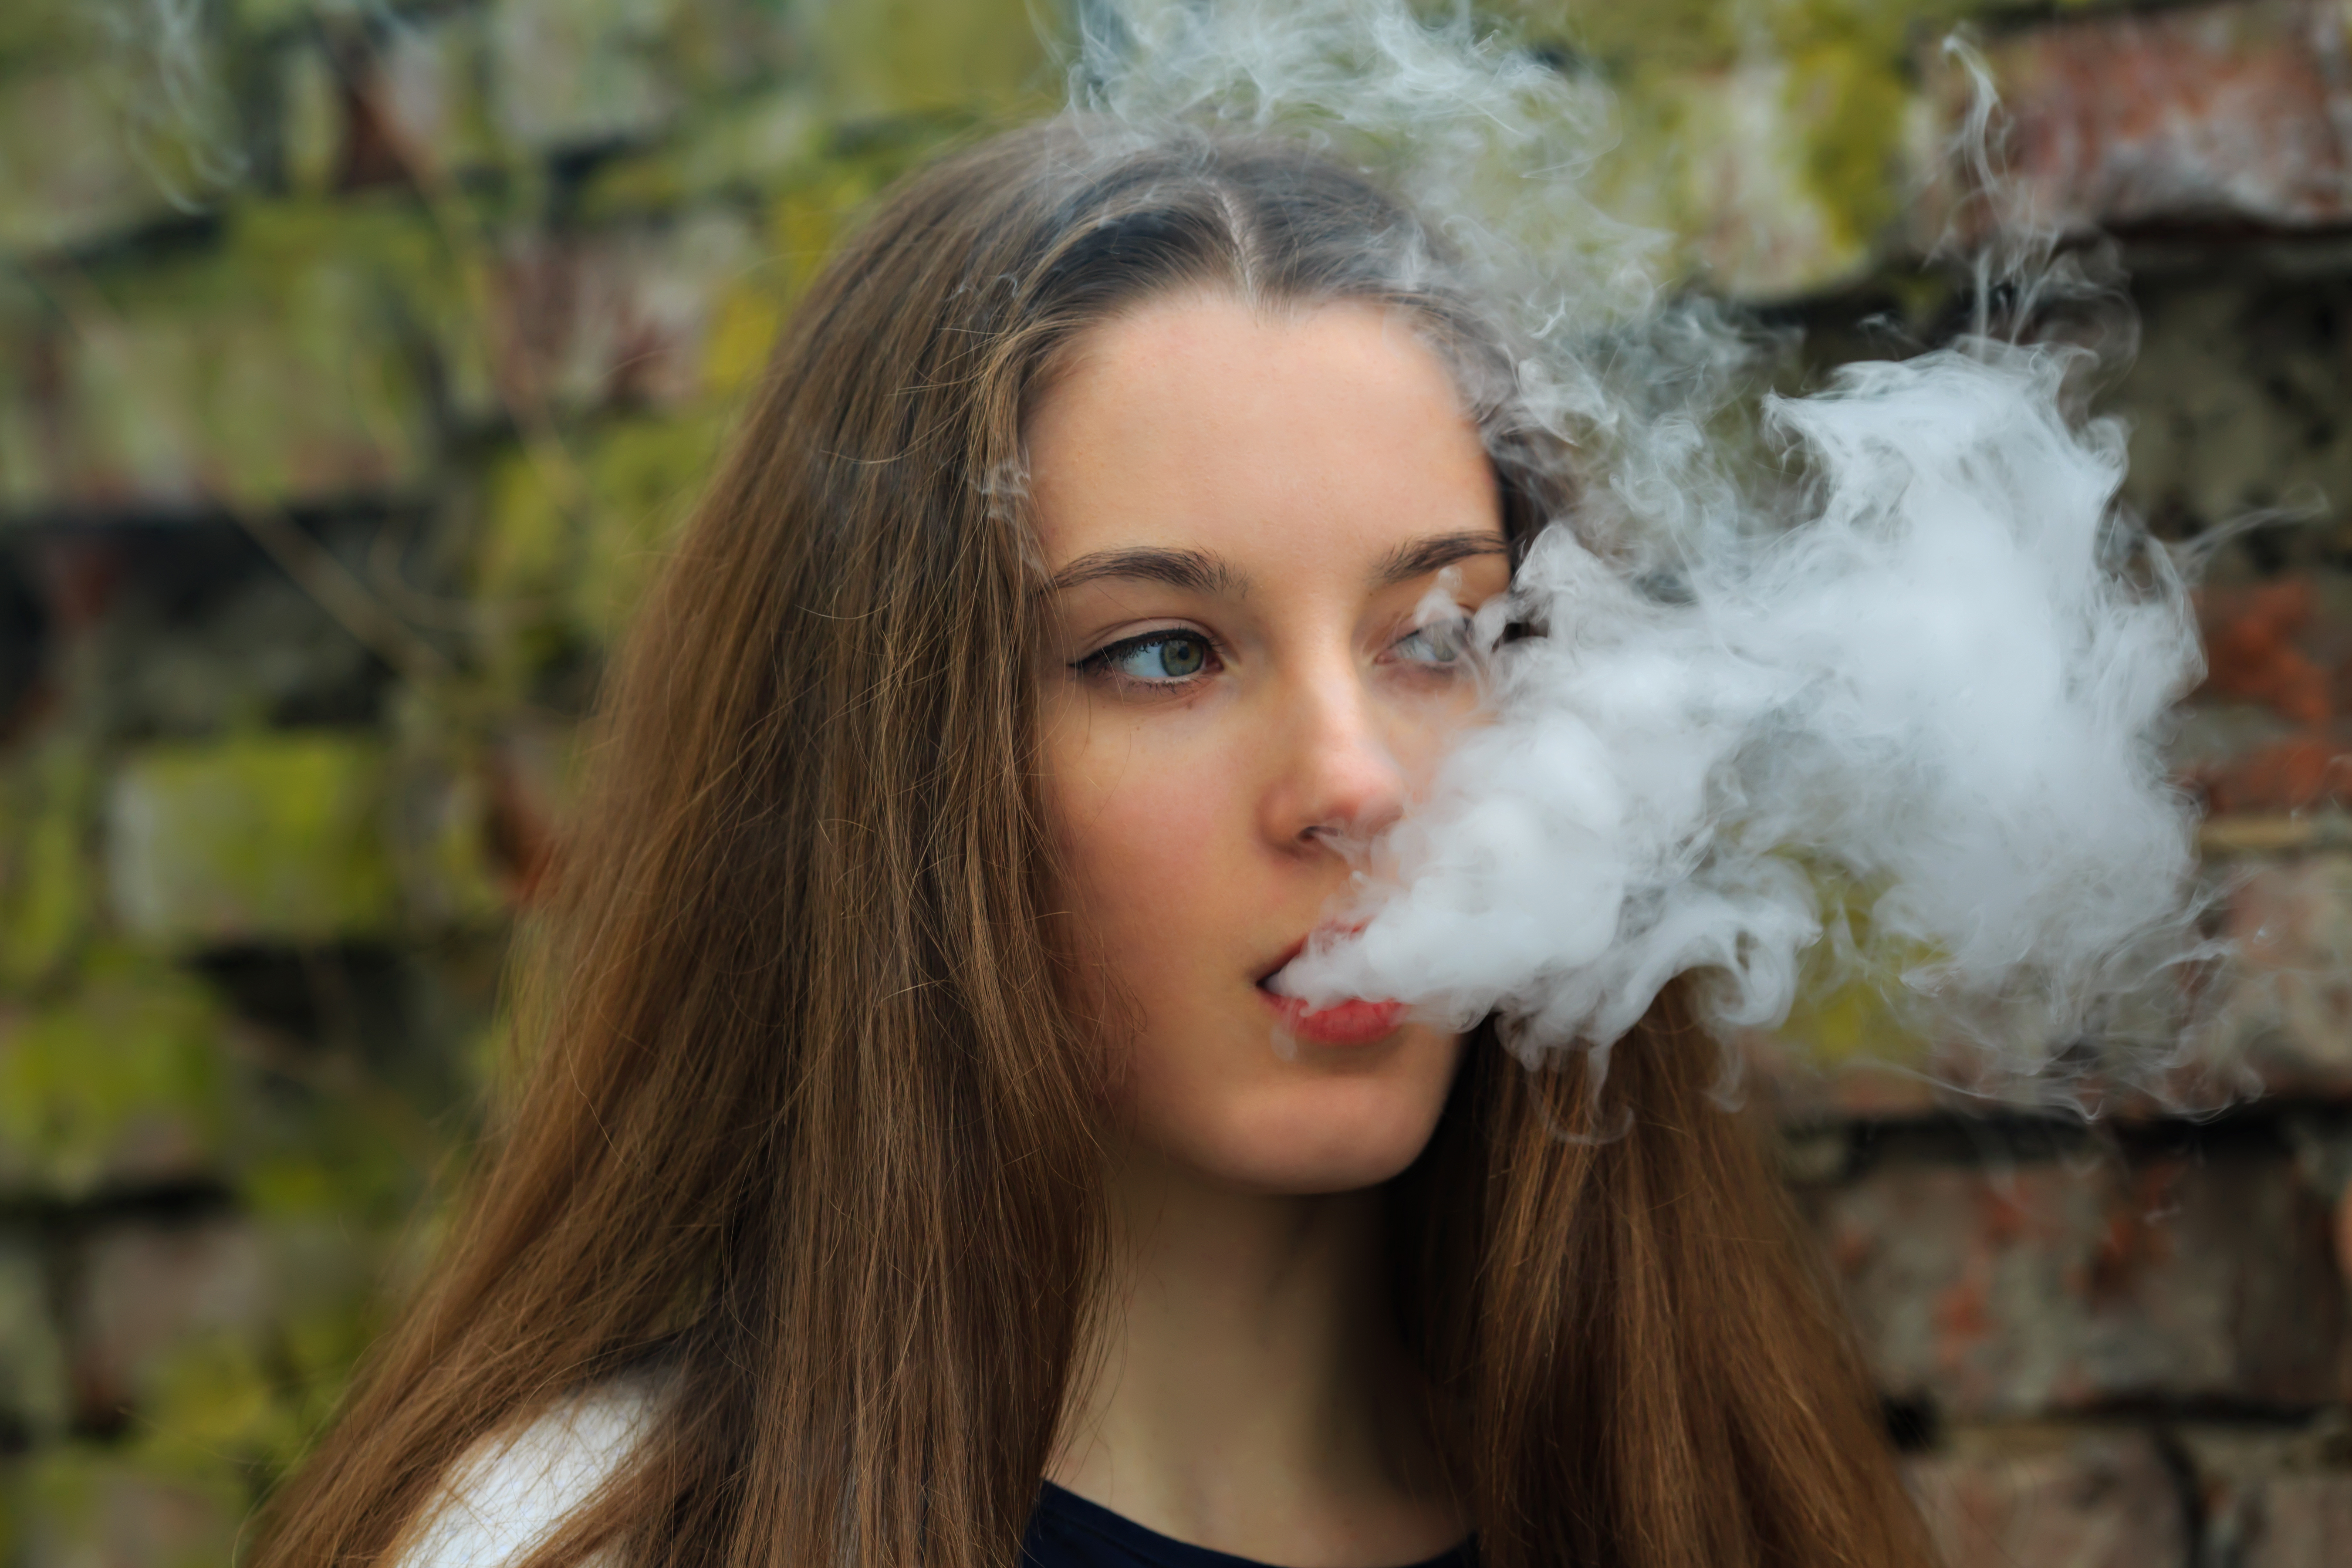 Вапе видео. Подросток с электронной сигаретой. Курящая девушка подросток. Девочки подростки курят. Курение девушек.